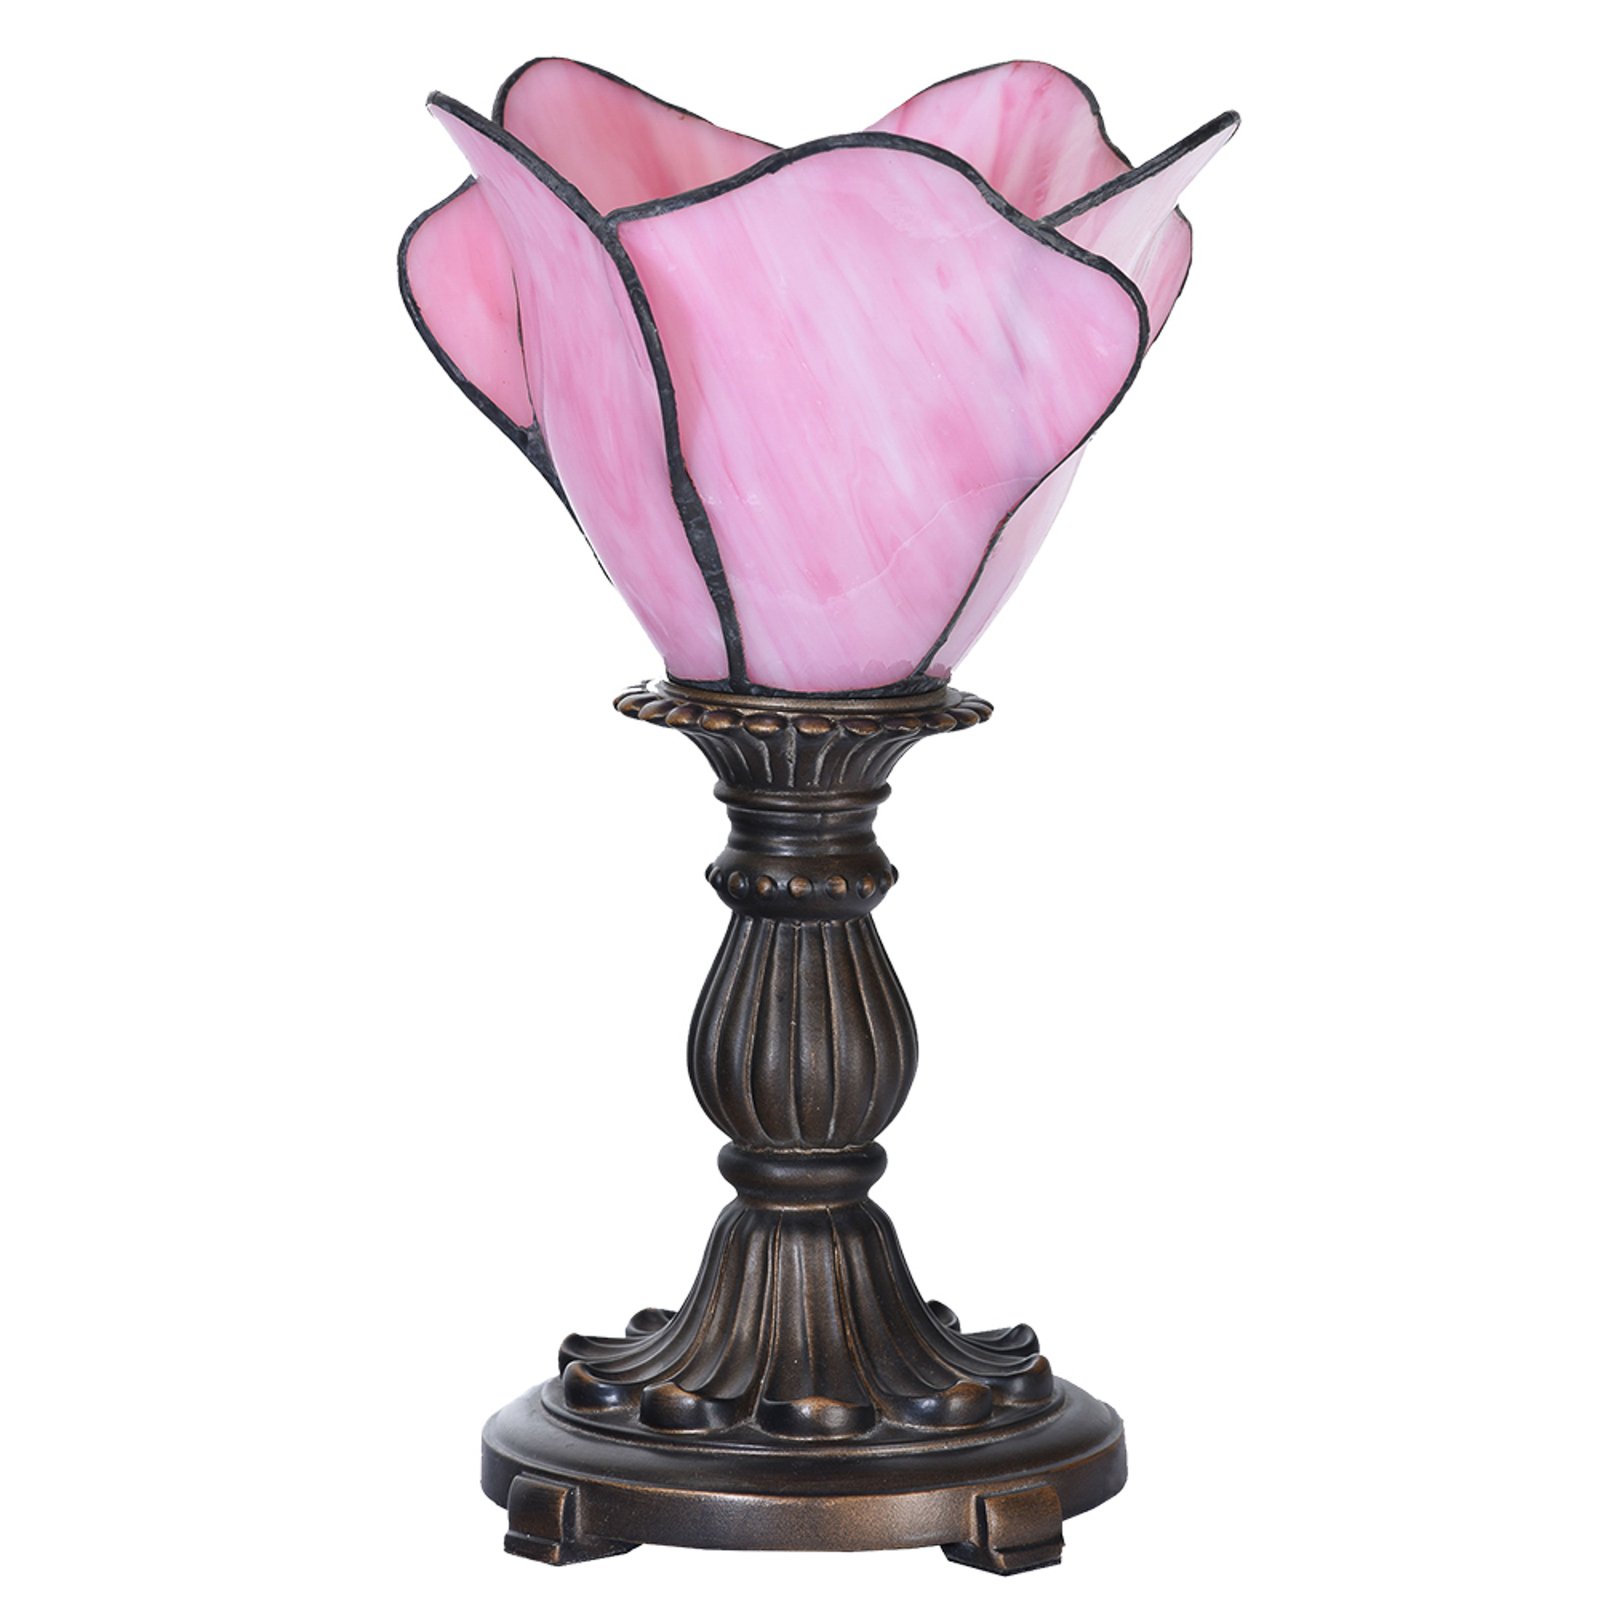 Stolní lampa 5LL-6099 v růžové barvě, styl Tiffany